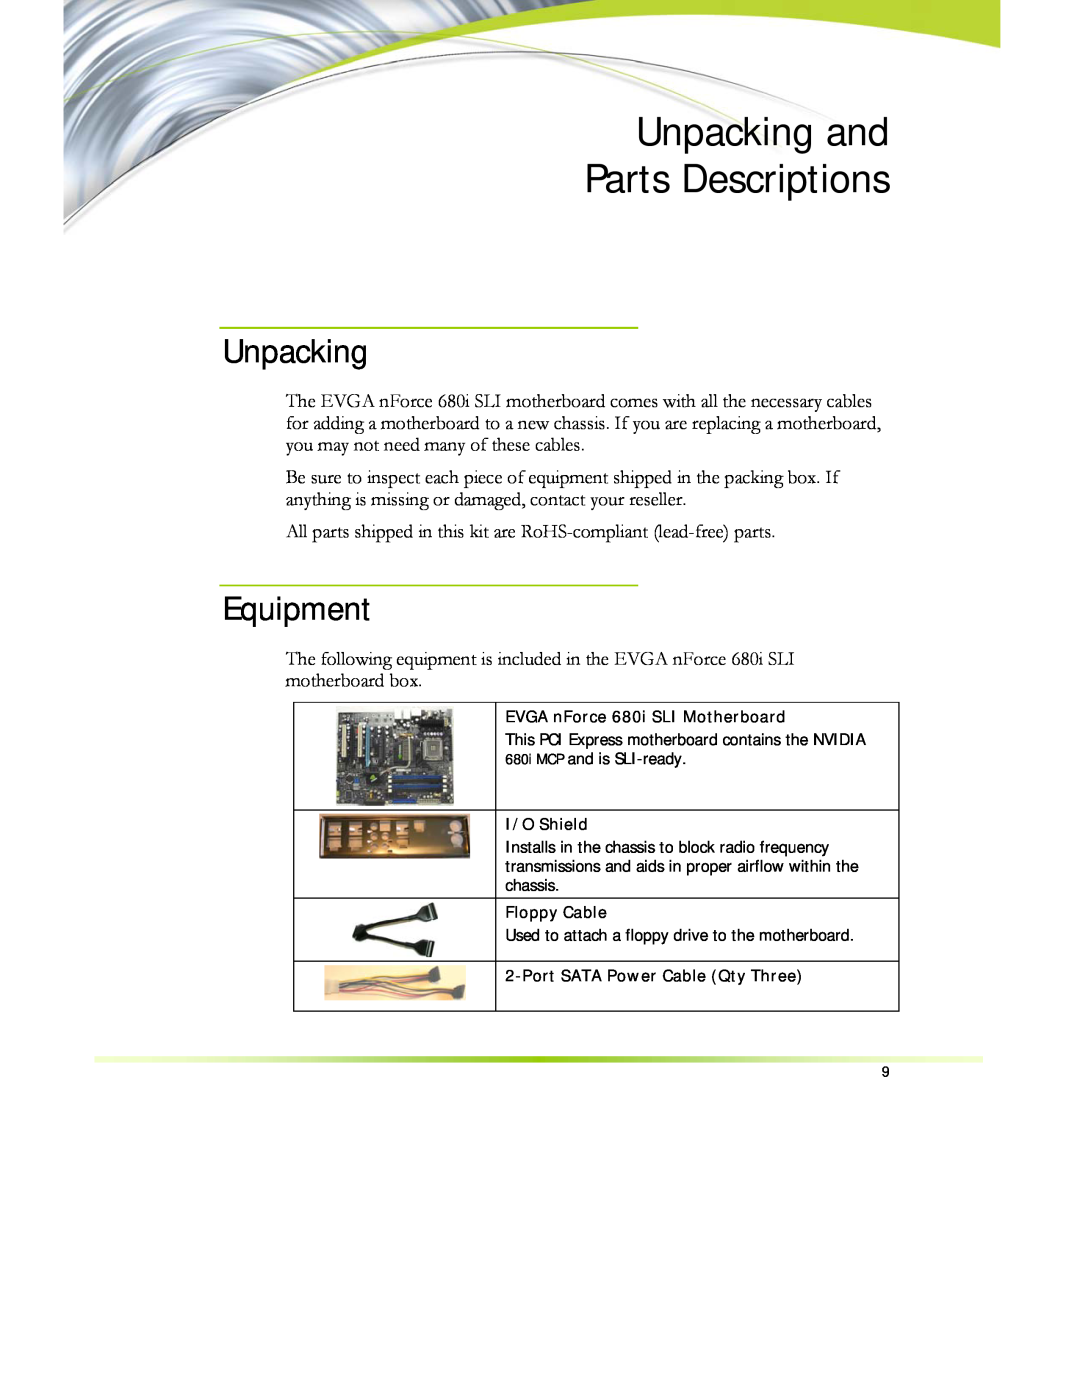 EVGA 122-CK-NF68-XX manual Unpacking and Parts Descriptions, Equipment 